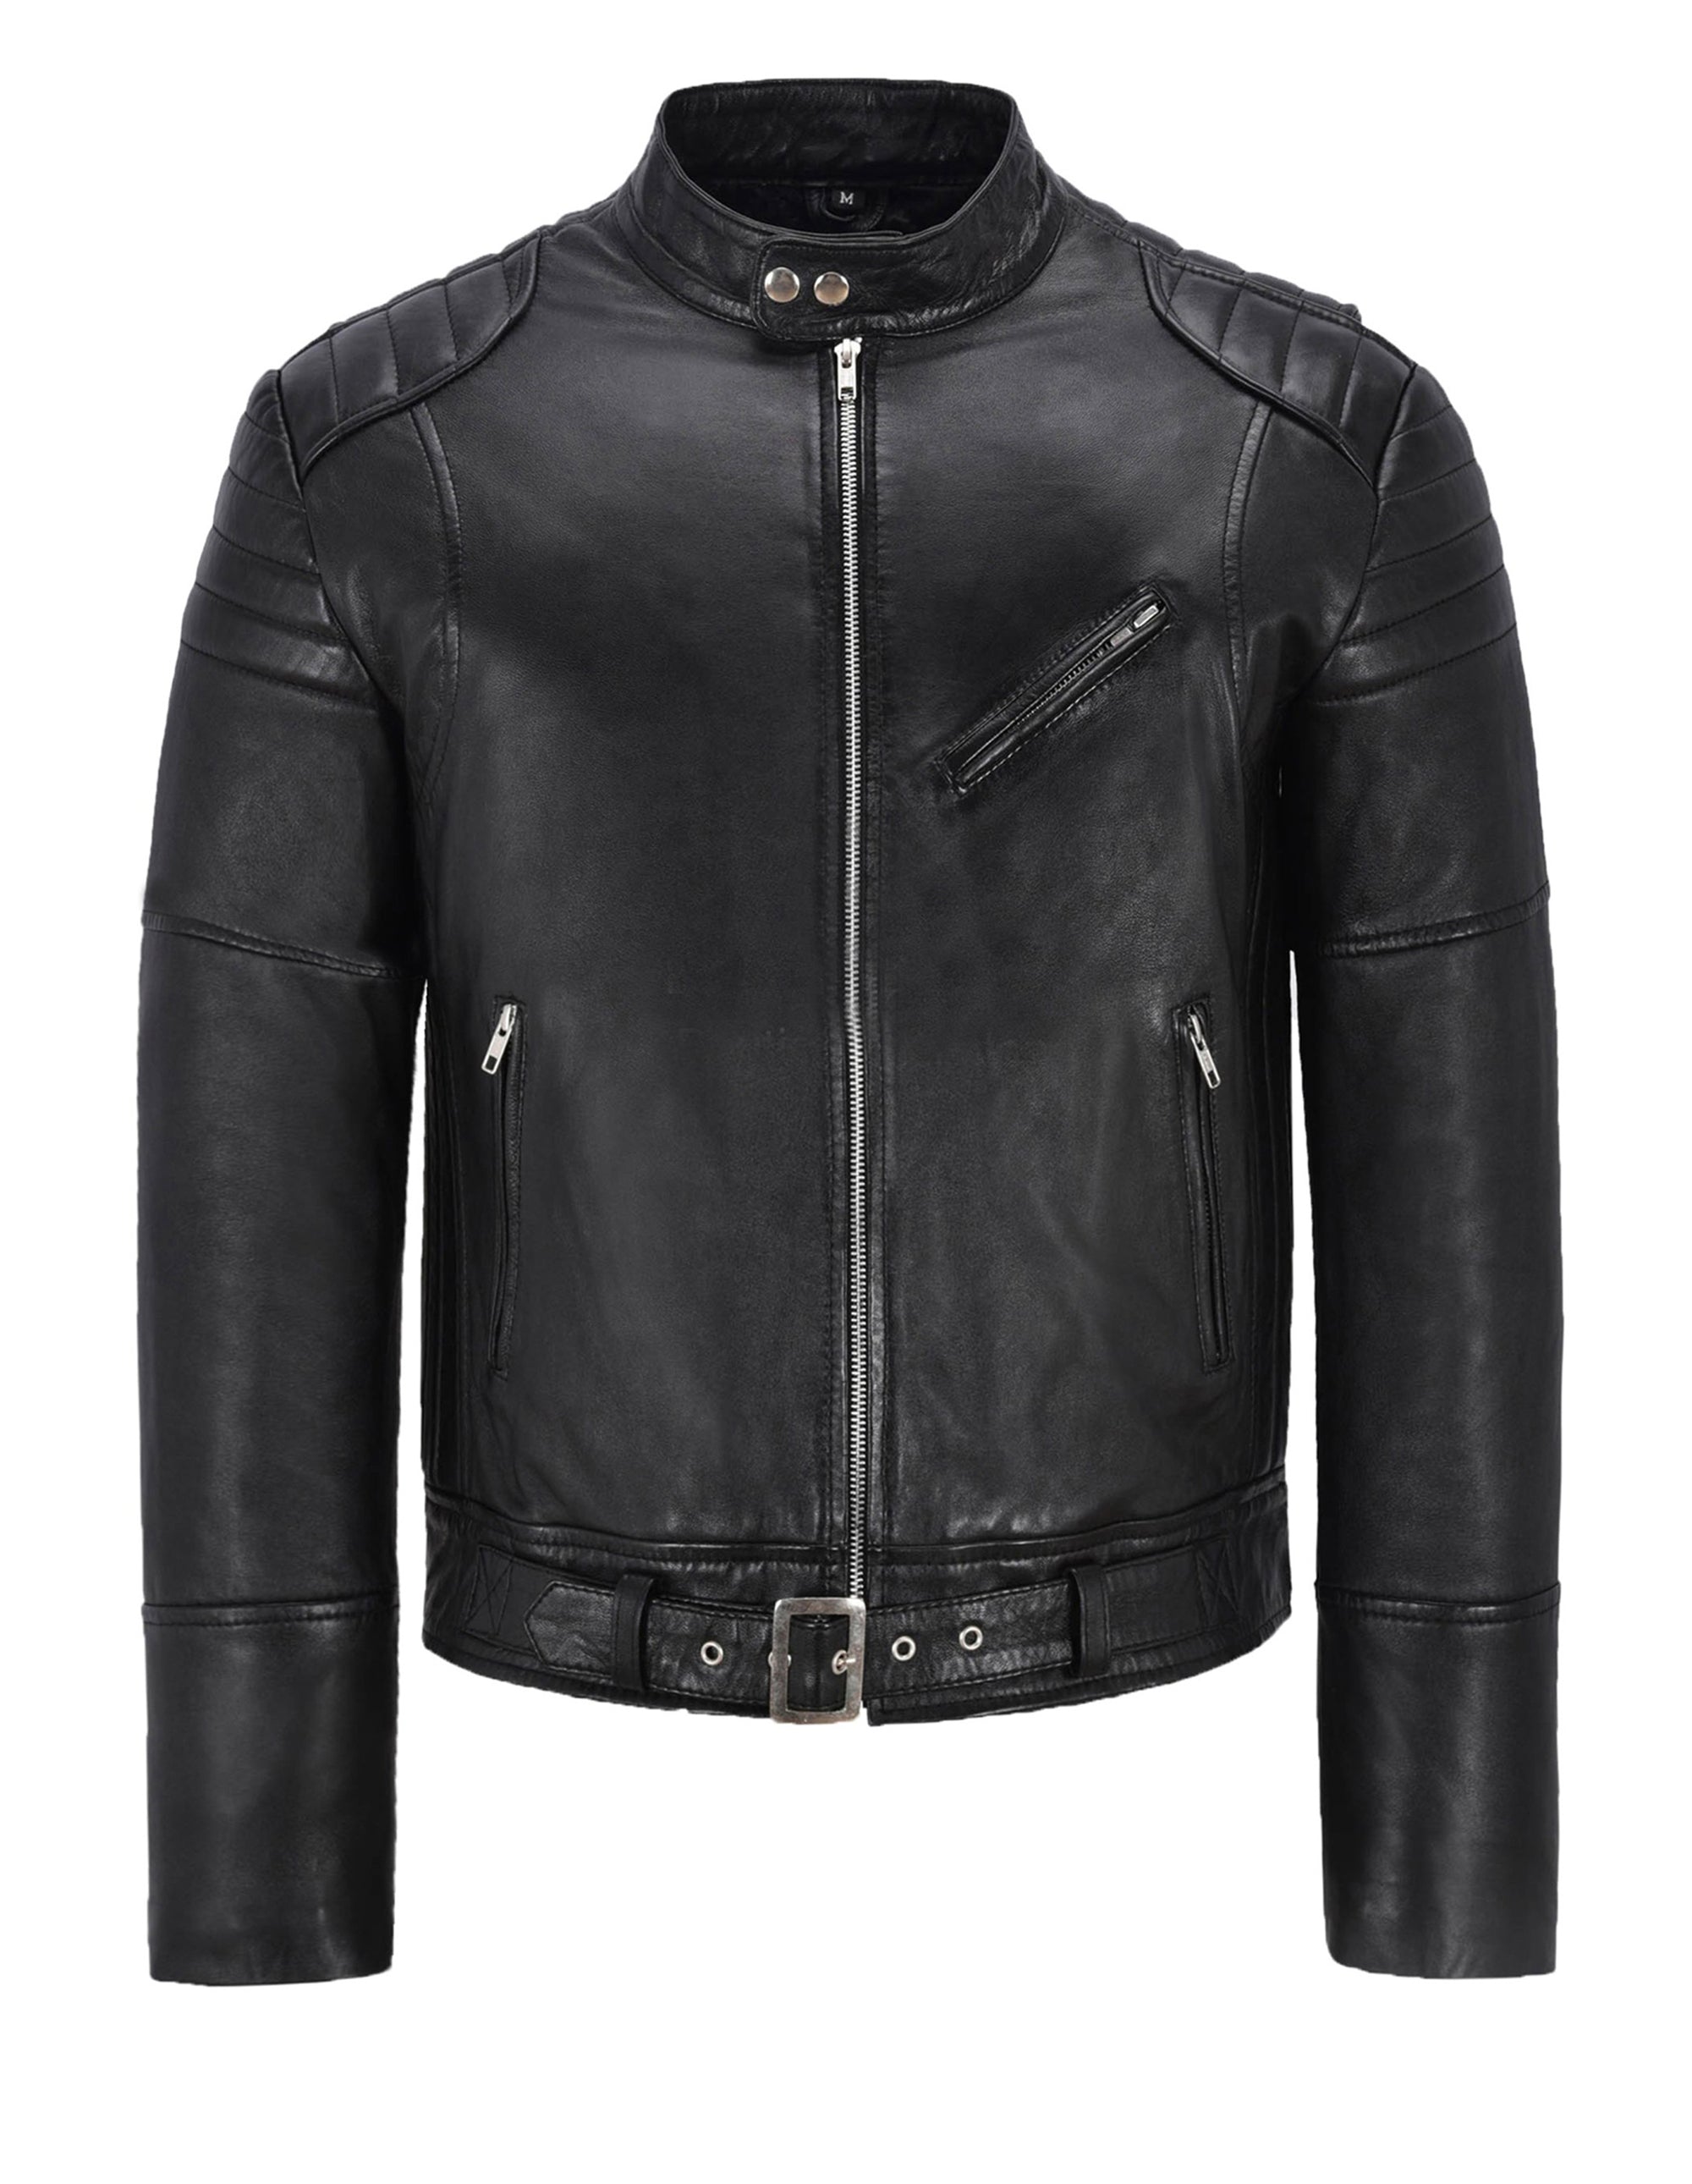 Black Leather Bike Jacket For Men